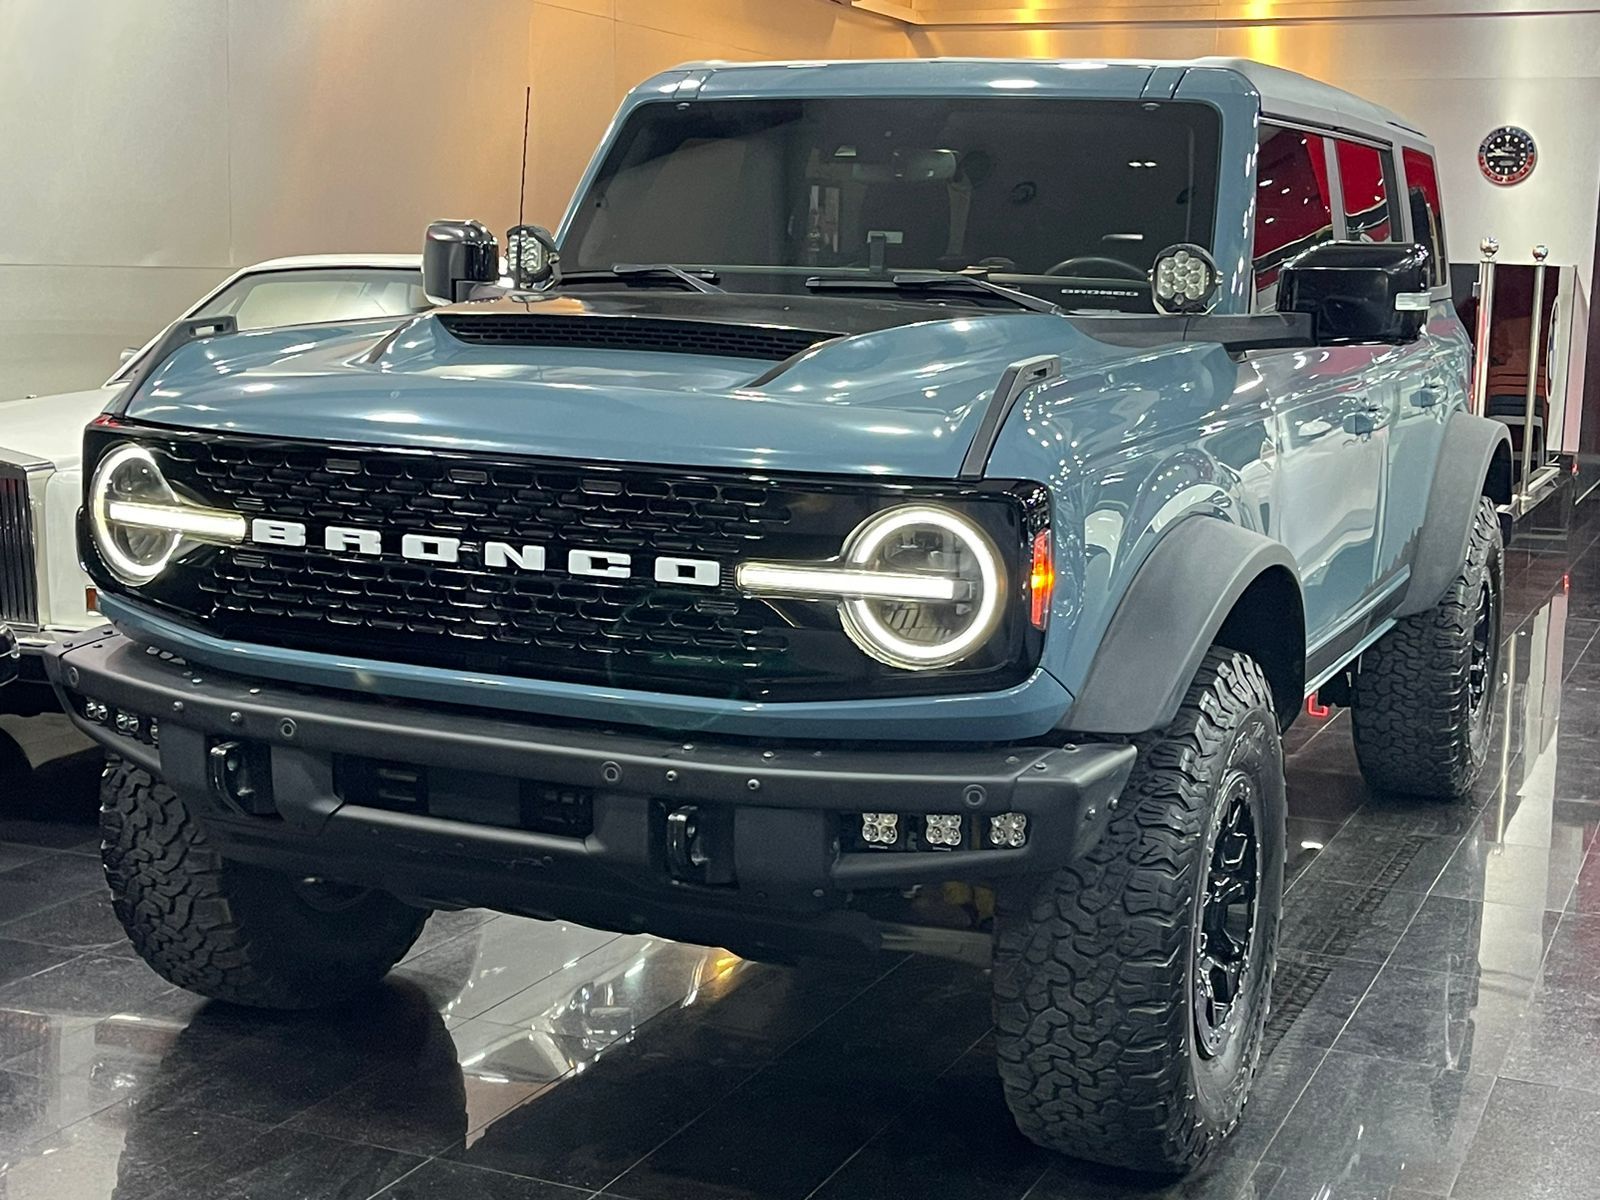 2021 Ford Bronco in dubai